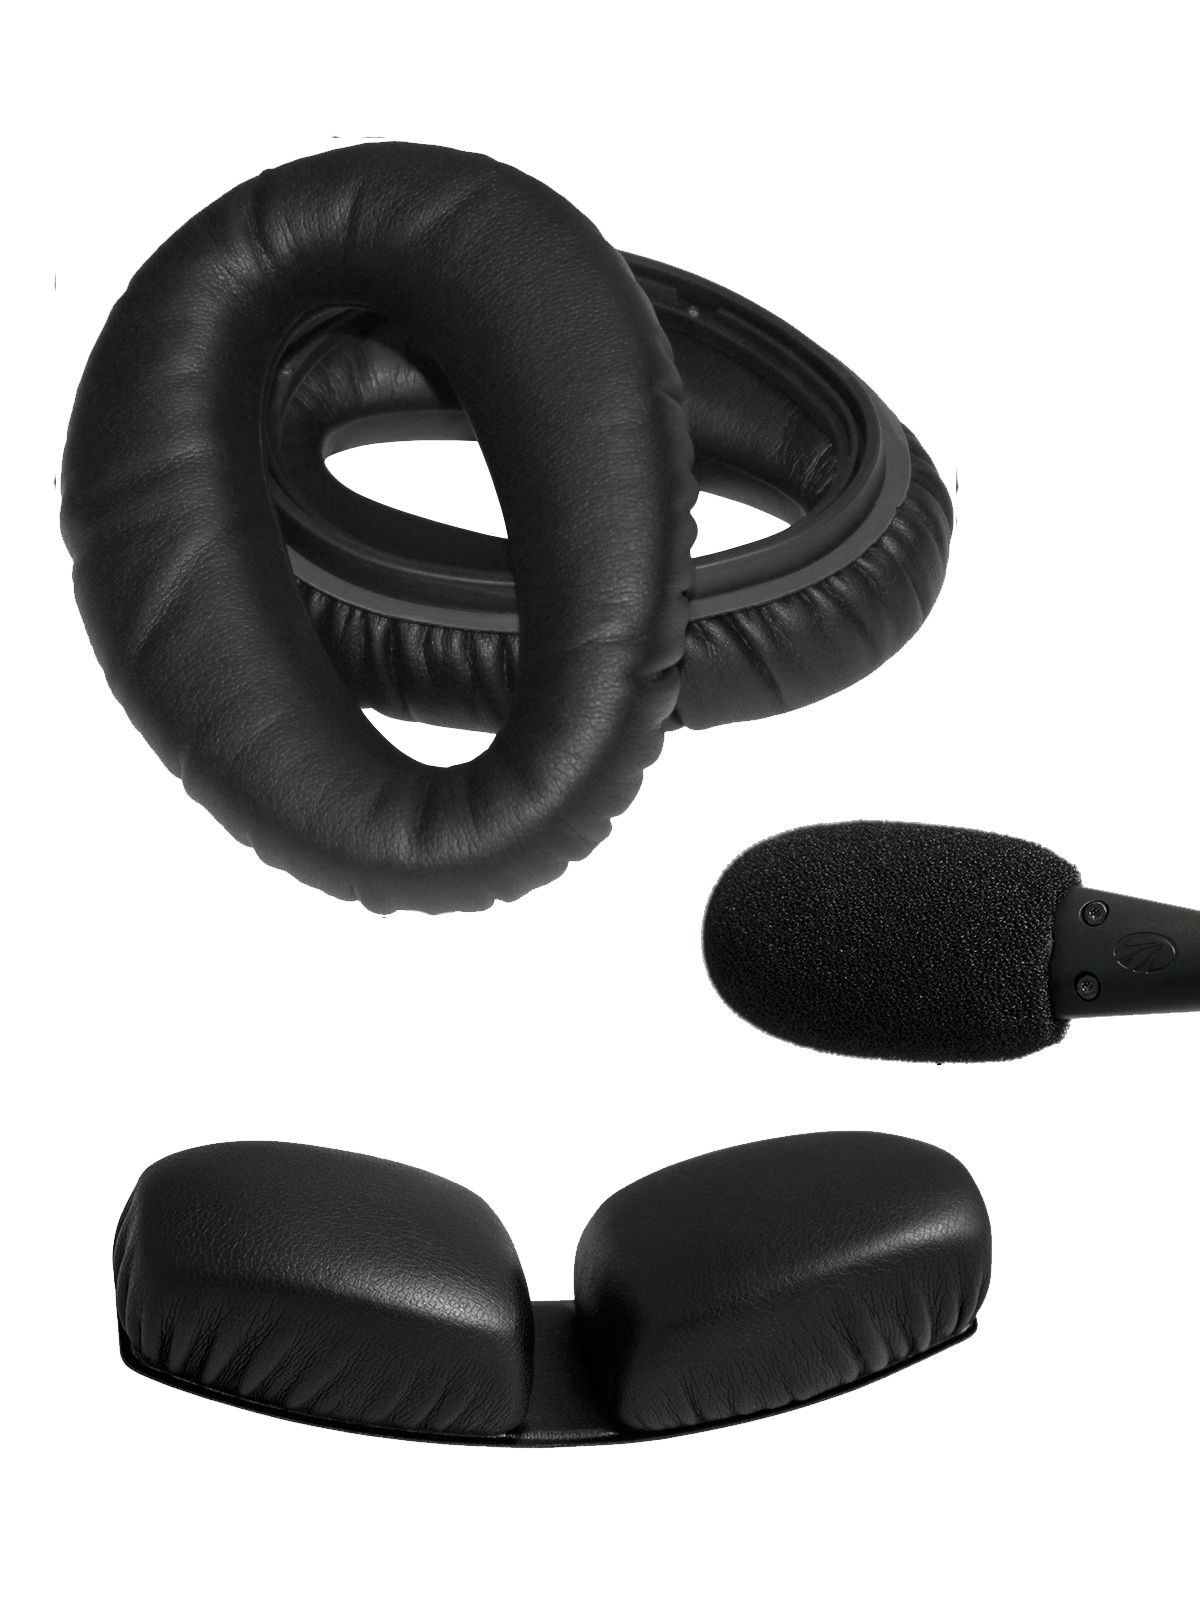 Lightspeed Deluxe Zubehör-Kit für Zulu Headsets - Ohrmuscheln, Deluxe Kopfpolster, Windschutz